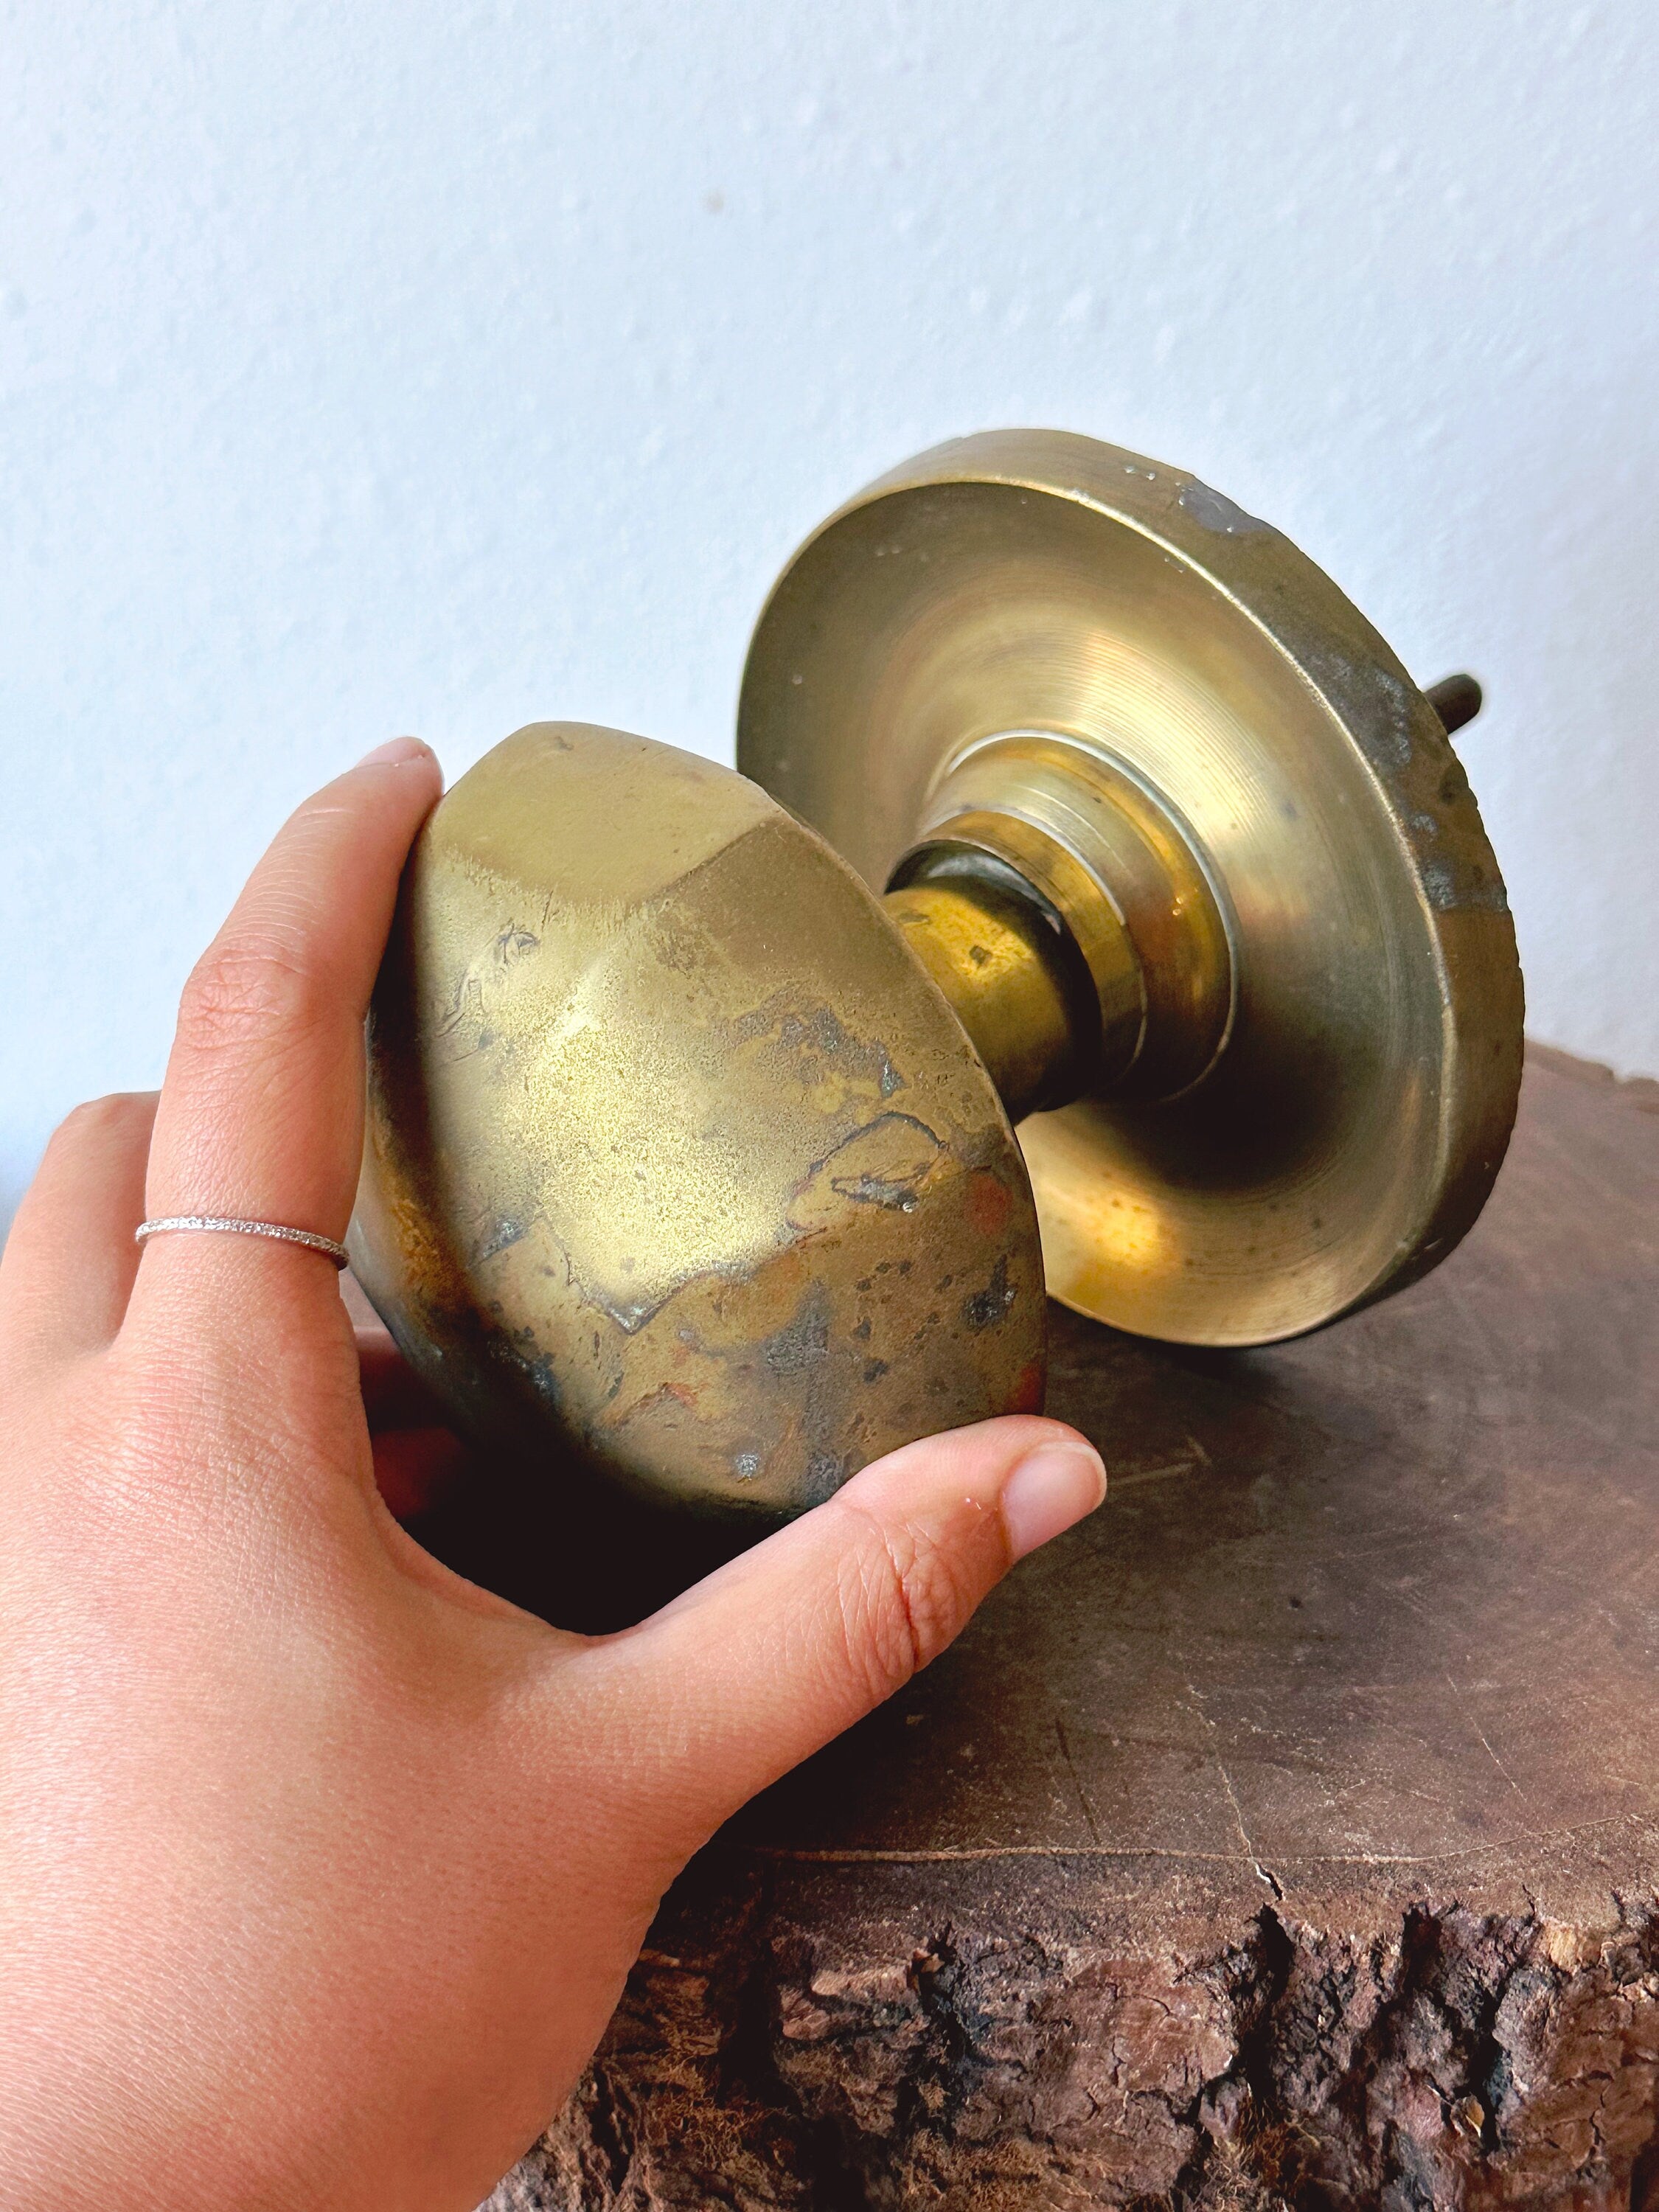 Oversized Vintage Solid Brass Door Knob, Large Door Handle Pull